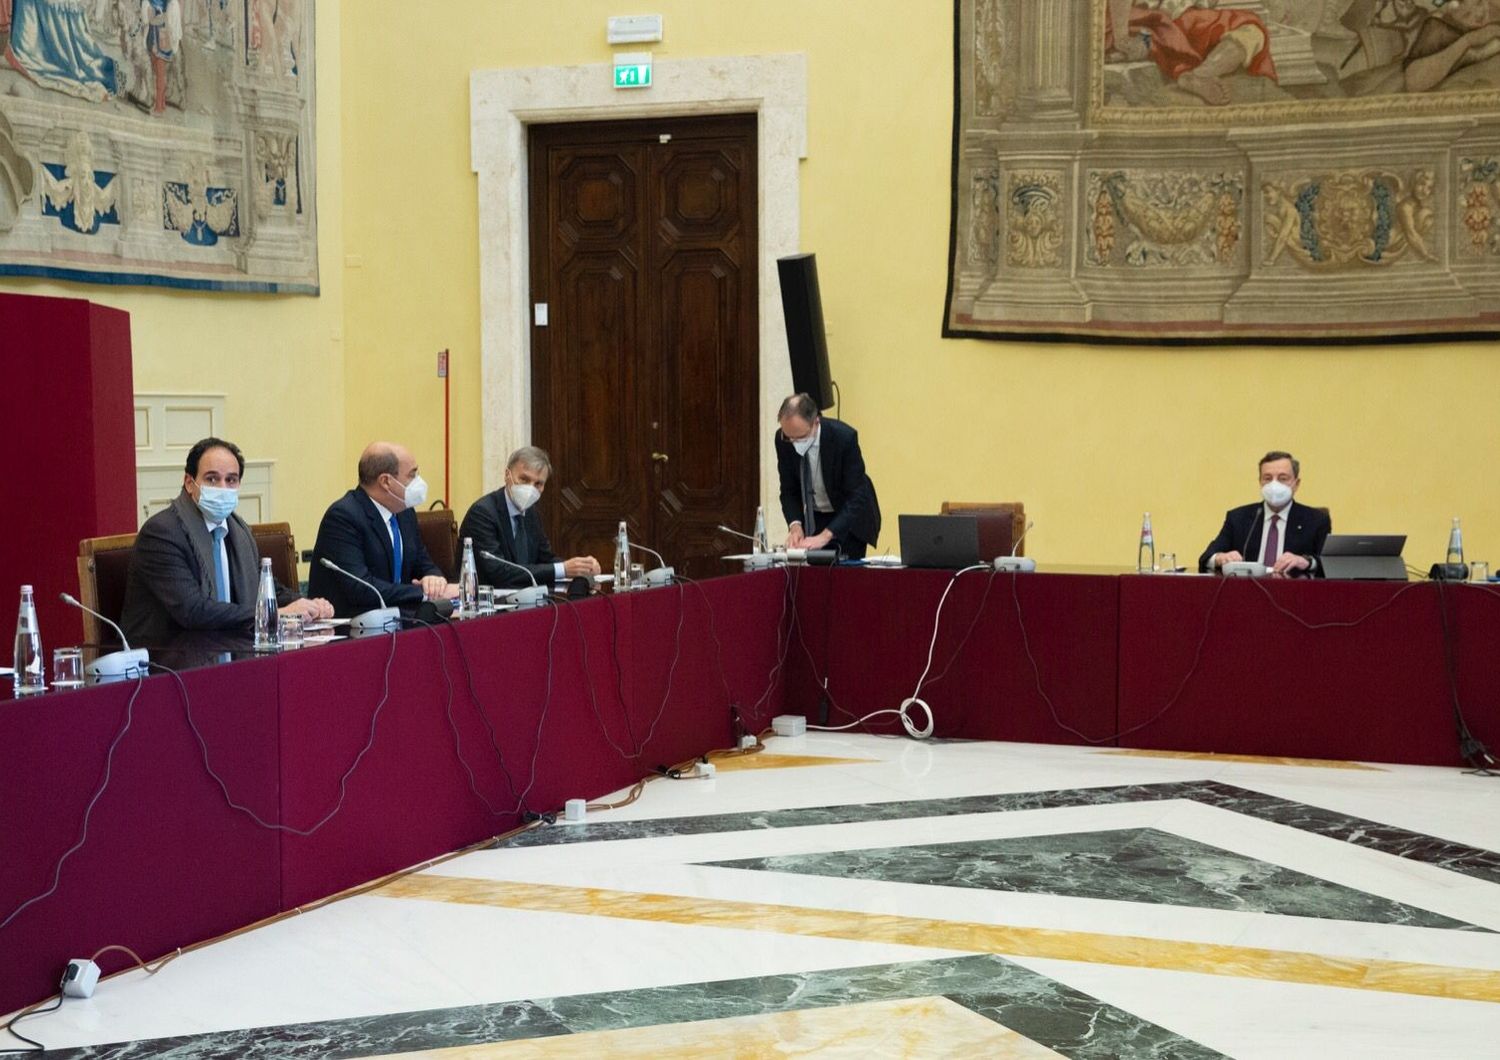 La delegazione del Pd alle consultazioni con Mario Draghi